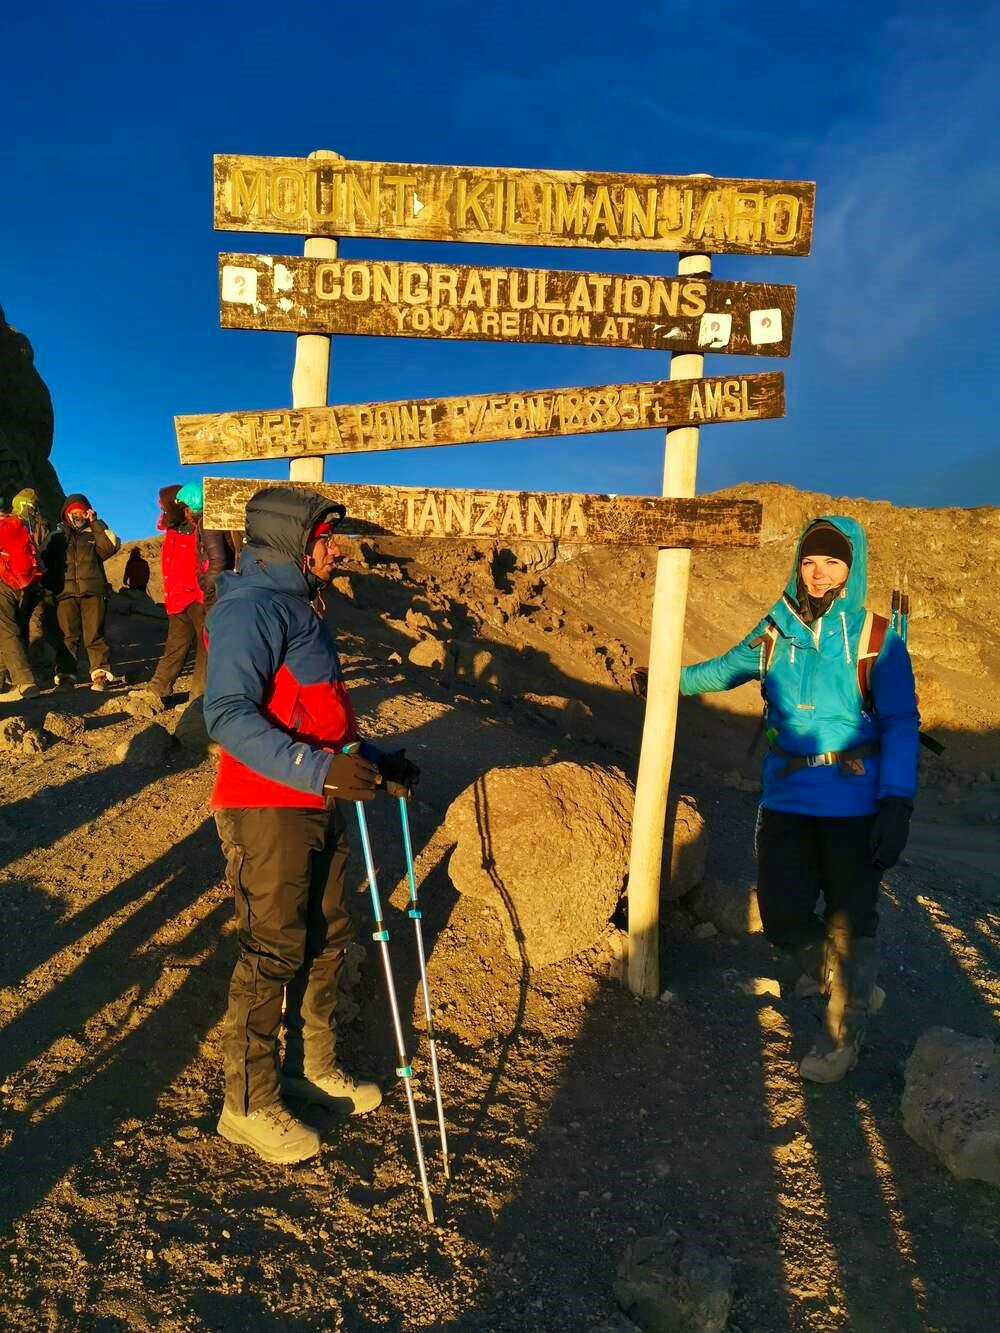 kilimanjaro-s 3 summits